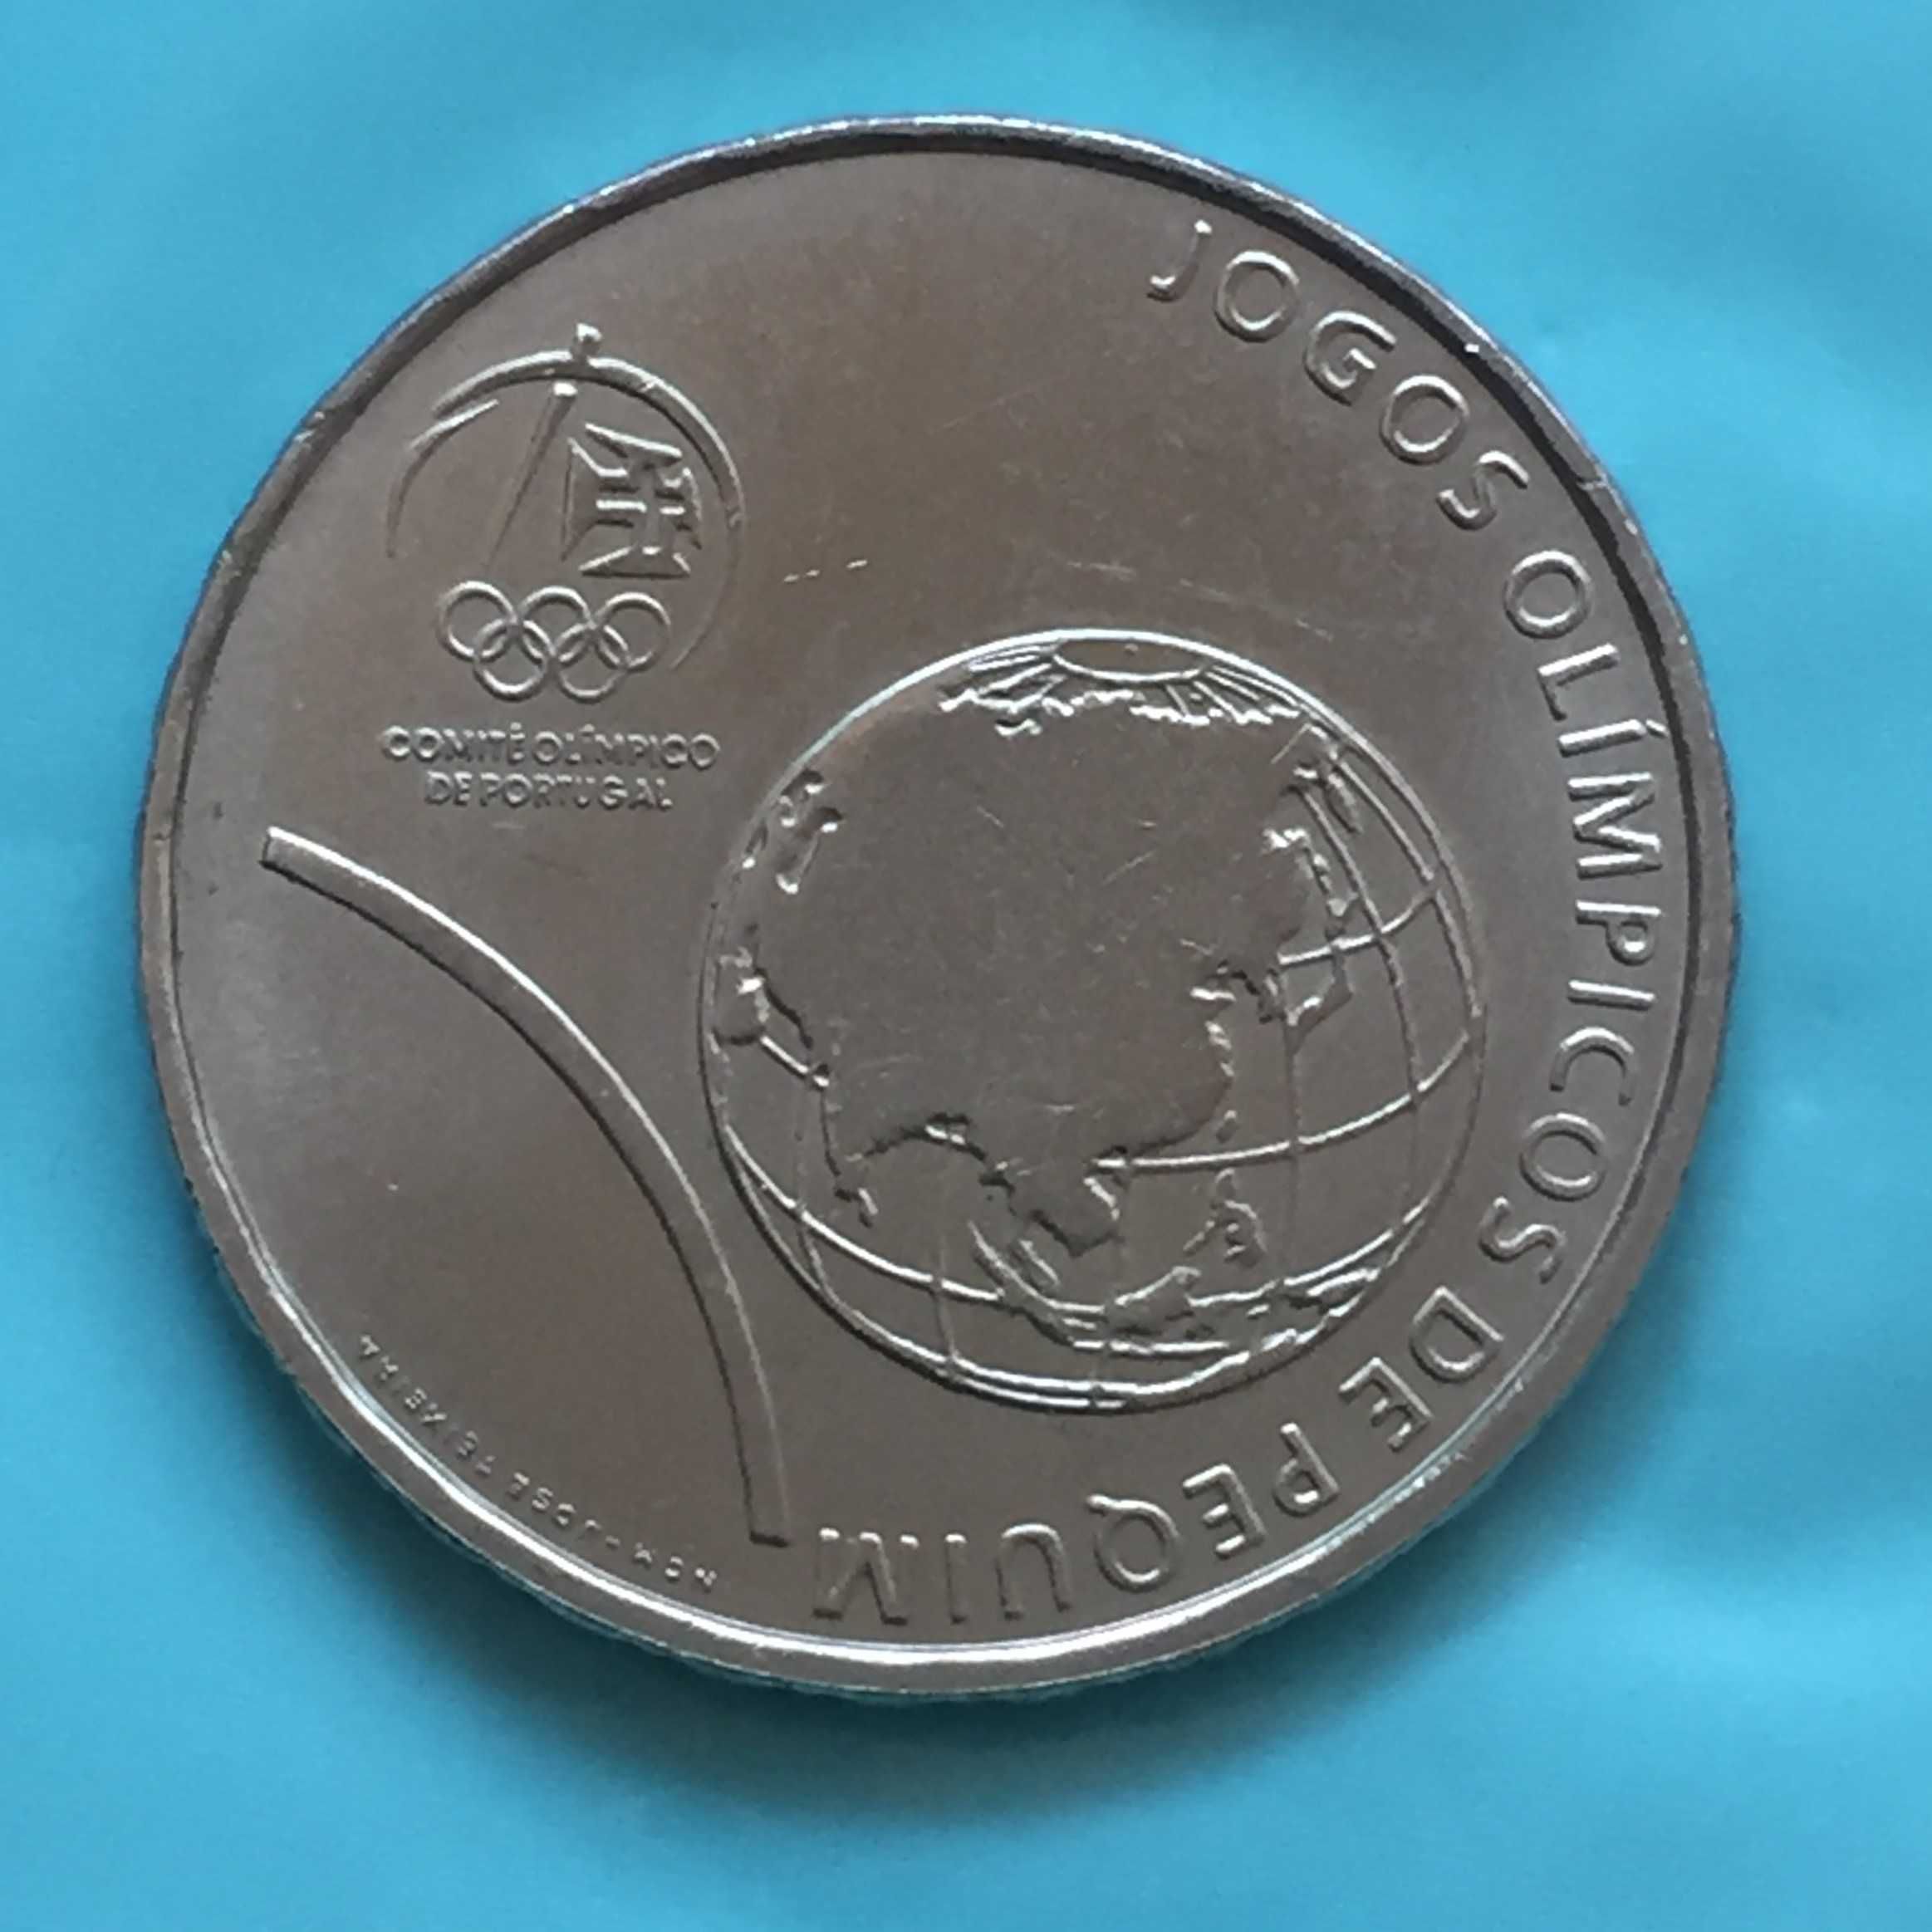 2.50 euros 2008 -Jogos Olímpicos de Pequim